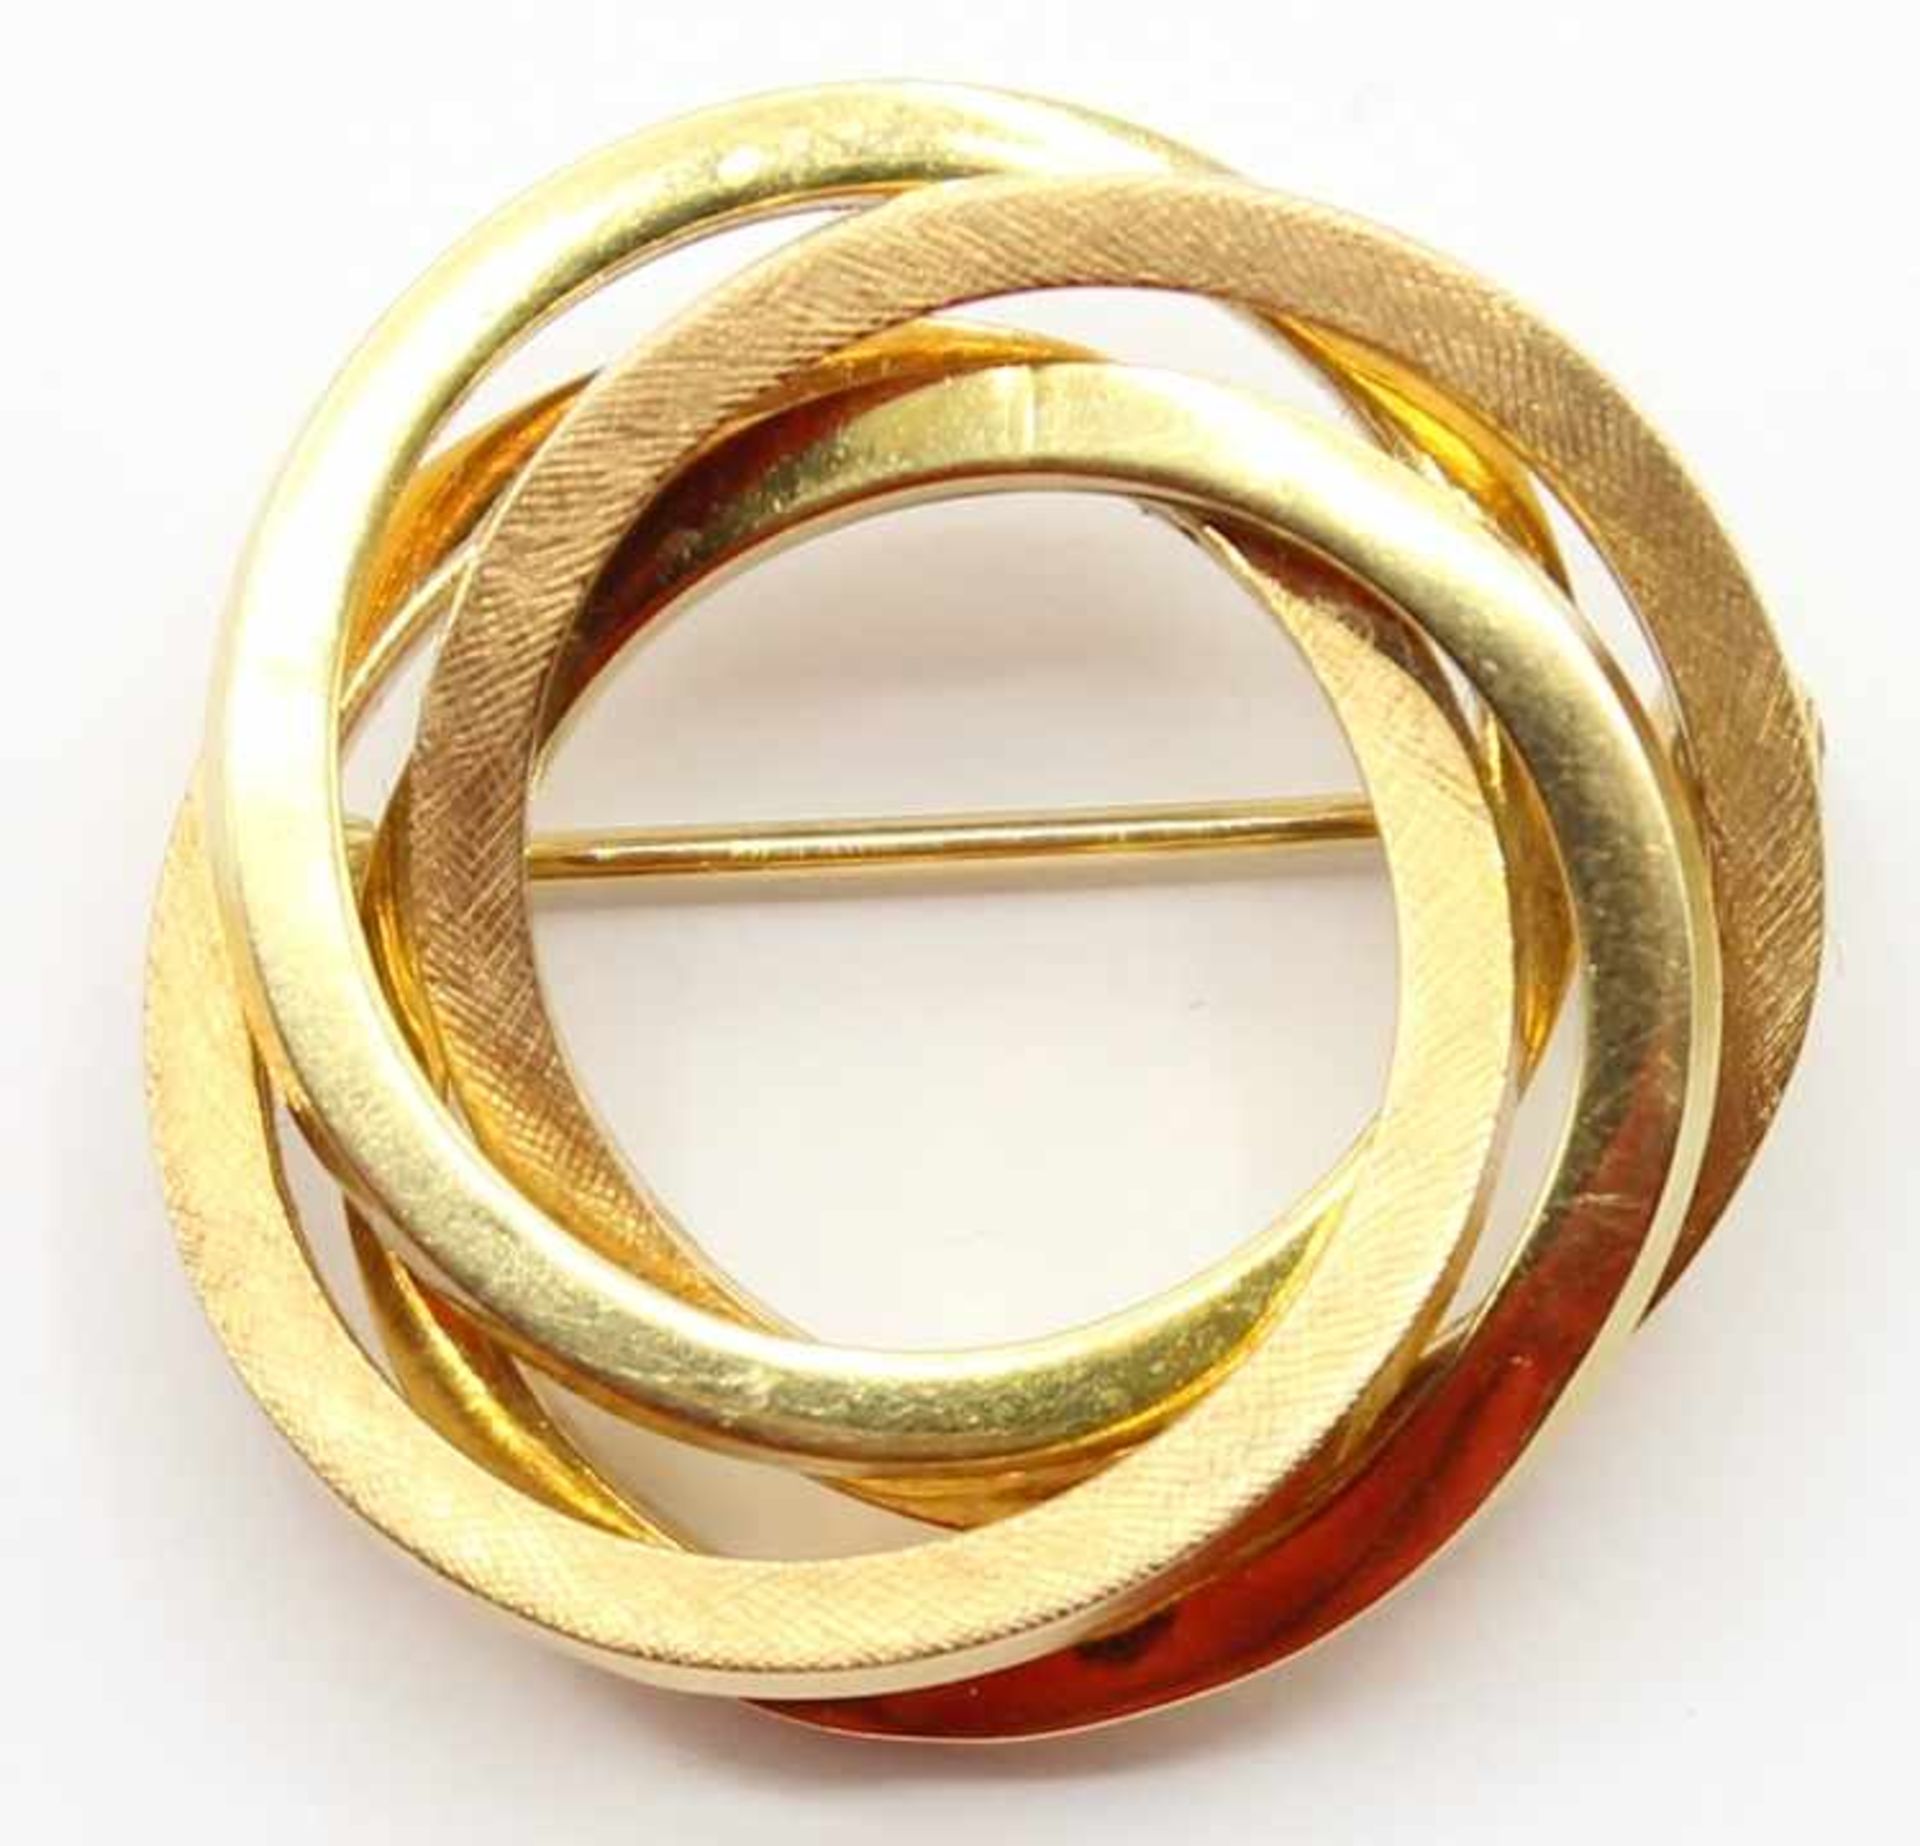 Goldene Brosche - Gold gest. 750 4 verschlungene Ringe, Sicherheitsverschluß, d.= 3 cm, ca. 7,2